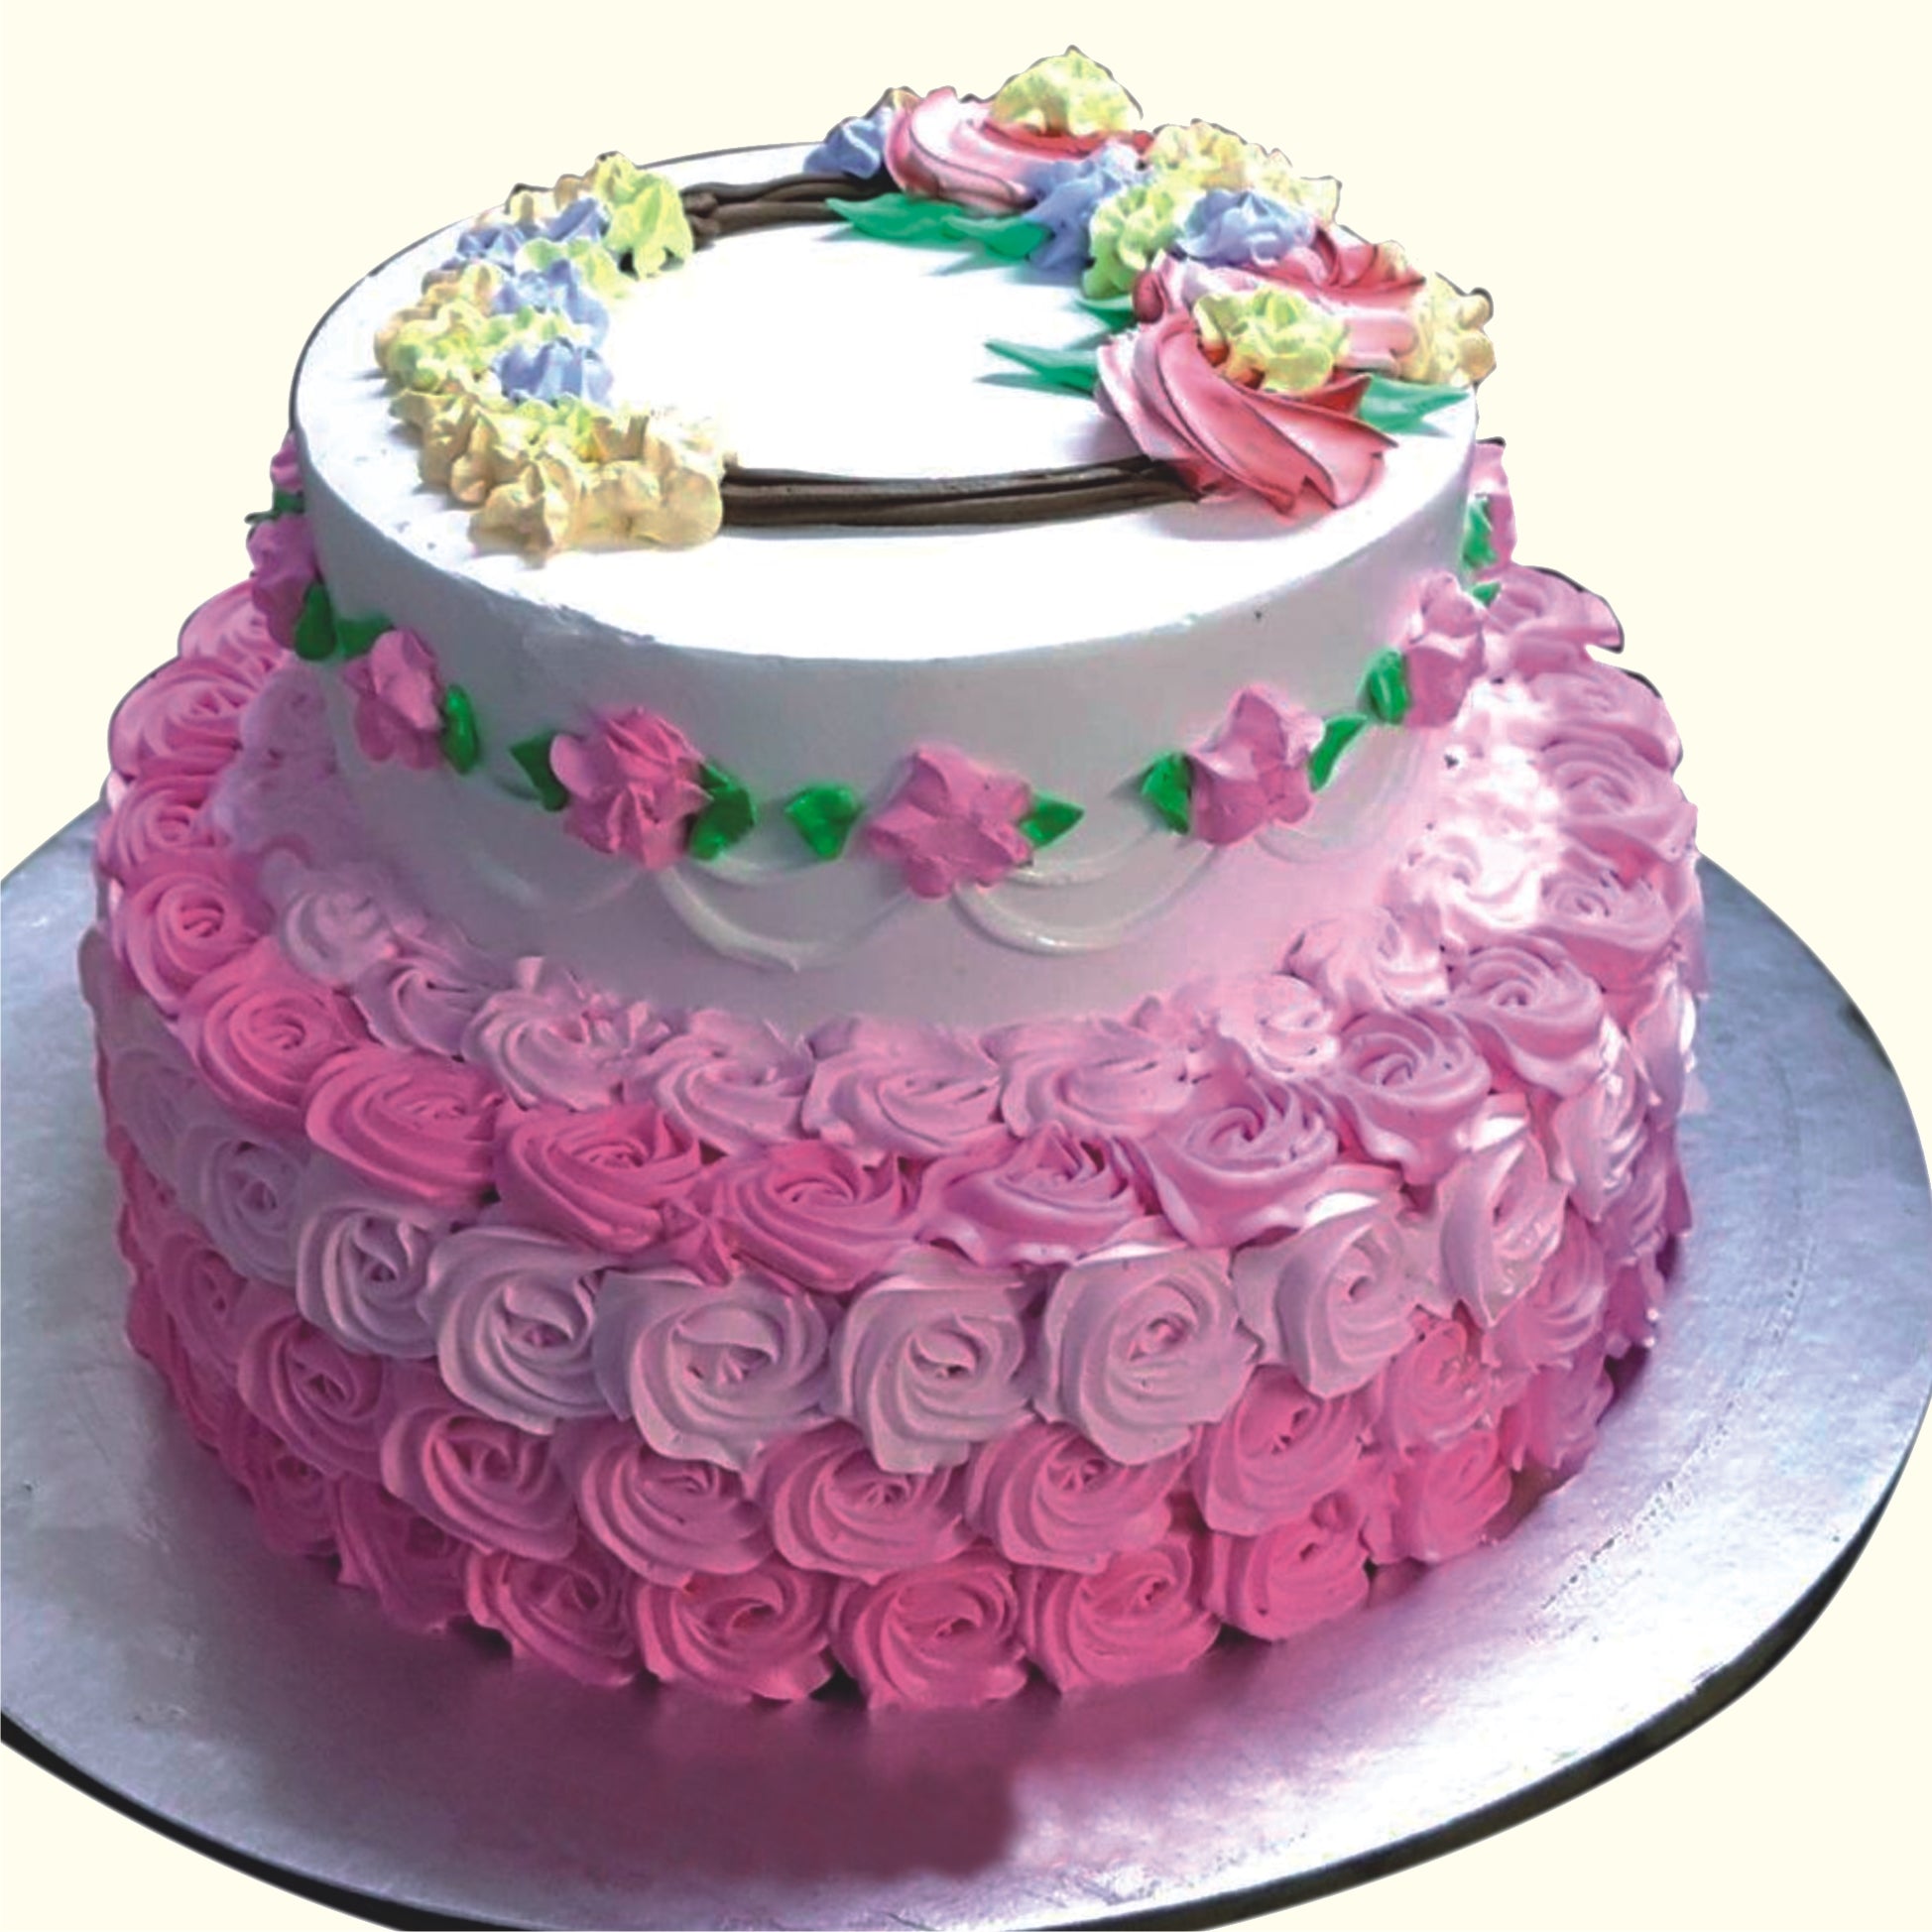 My 2-tier Barbie cake 😍 : r/cakedecorating